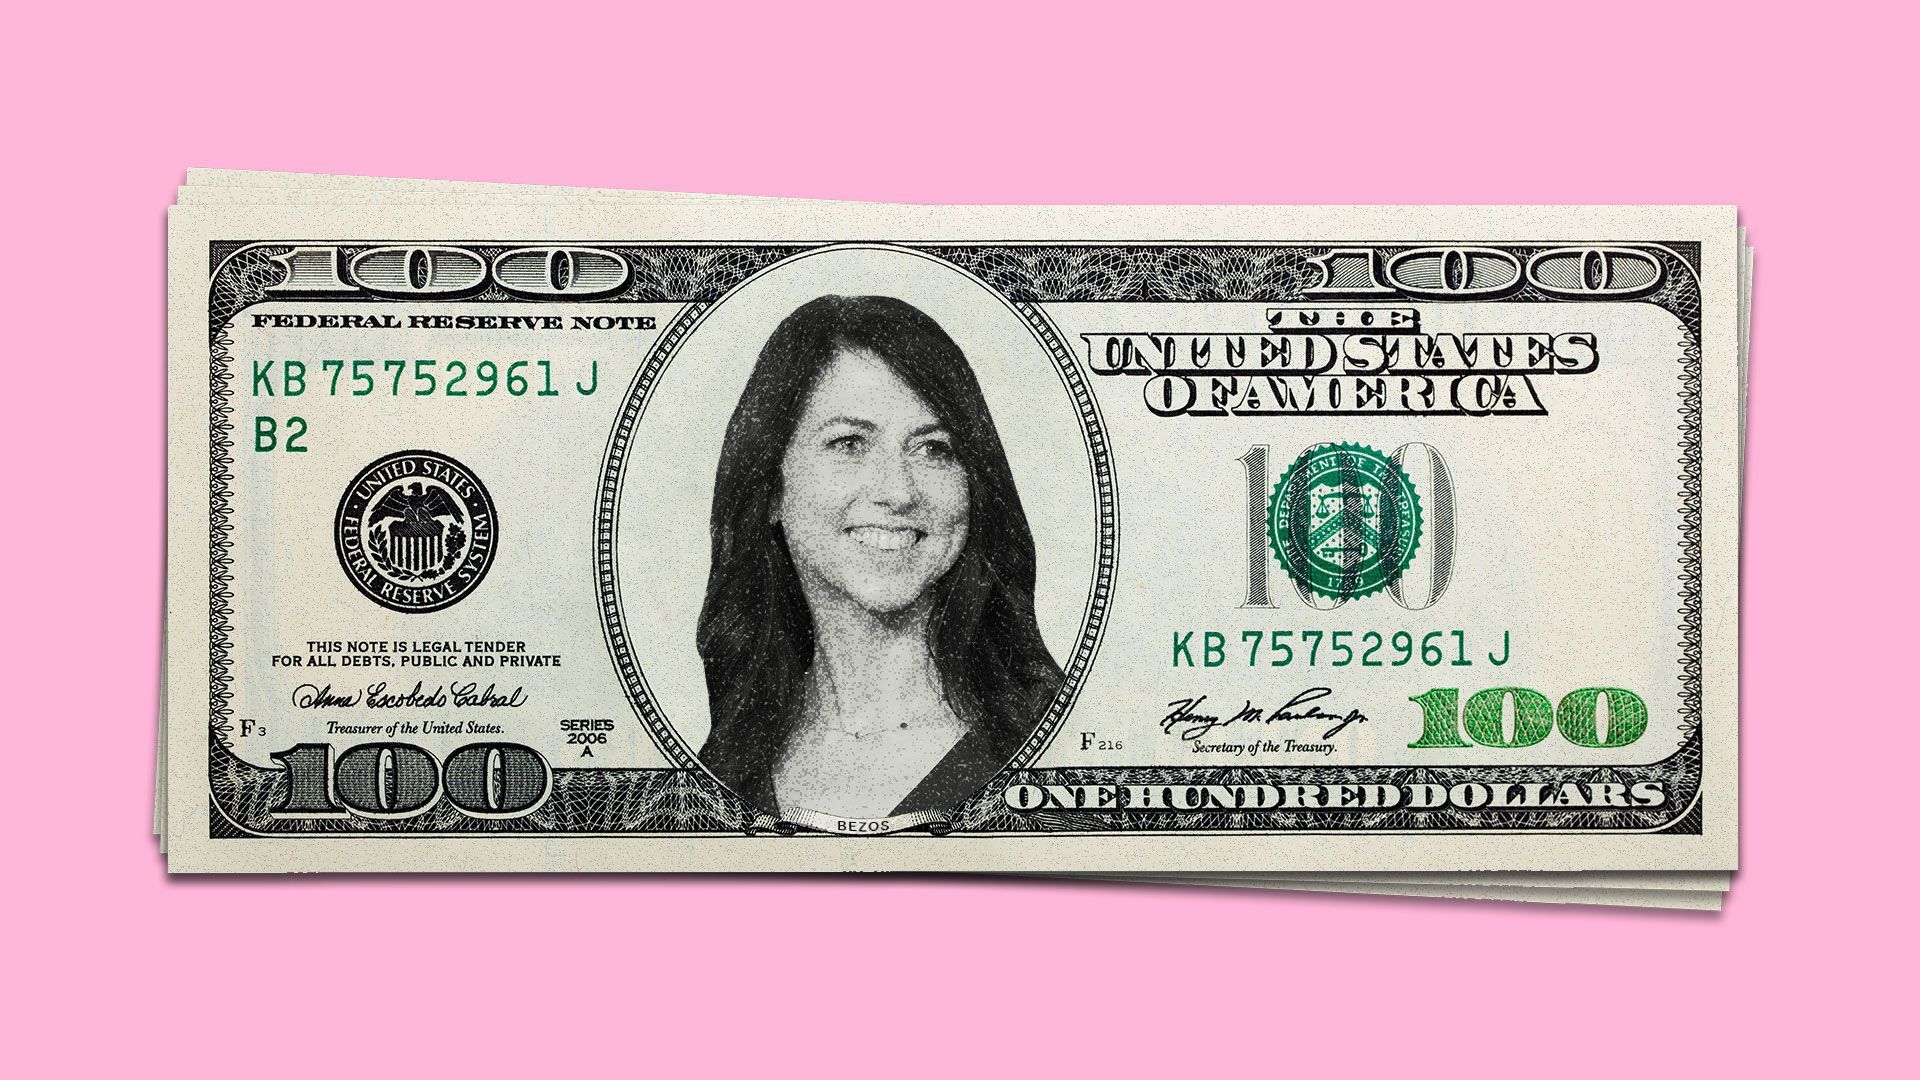 Mackenzie Bezos on a $100 bill